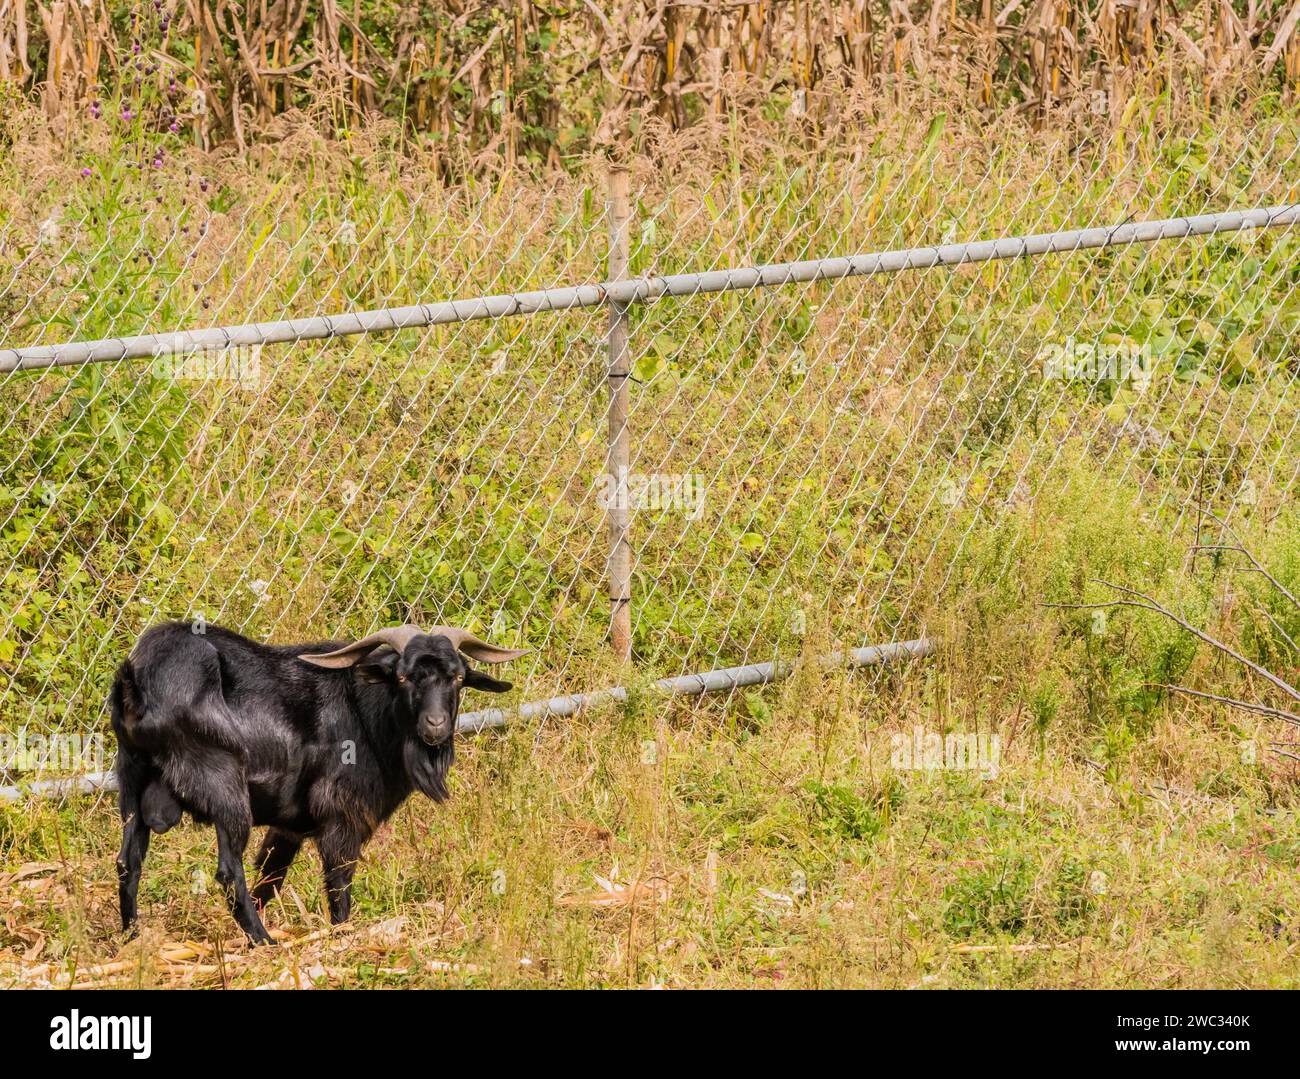 Primo piano di una grande capra nera con lunghe corna davanti alla recinzione a catena Foto Stock